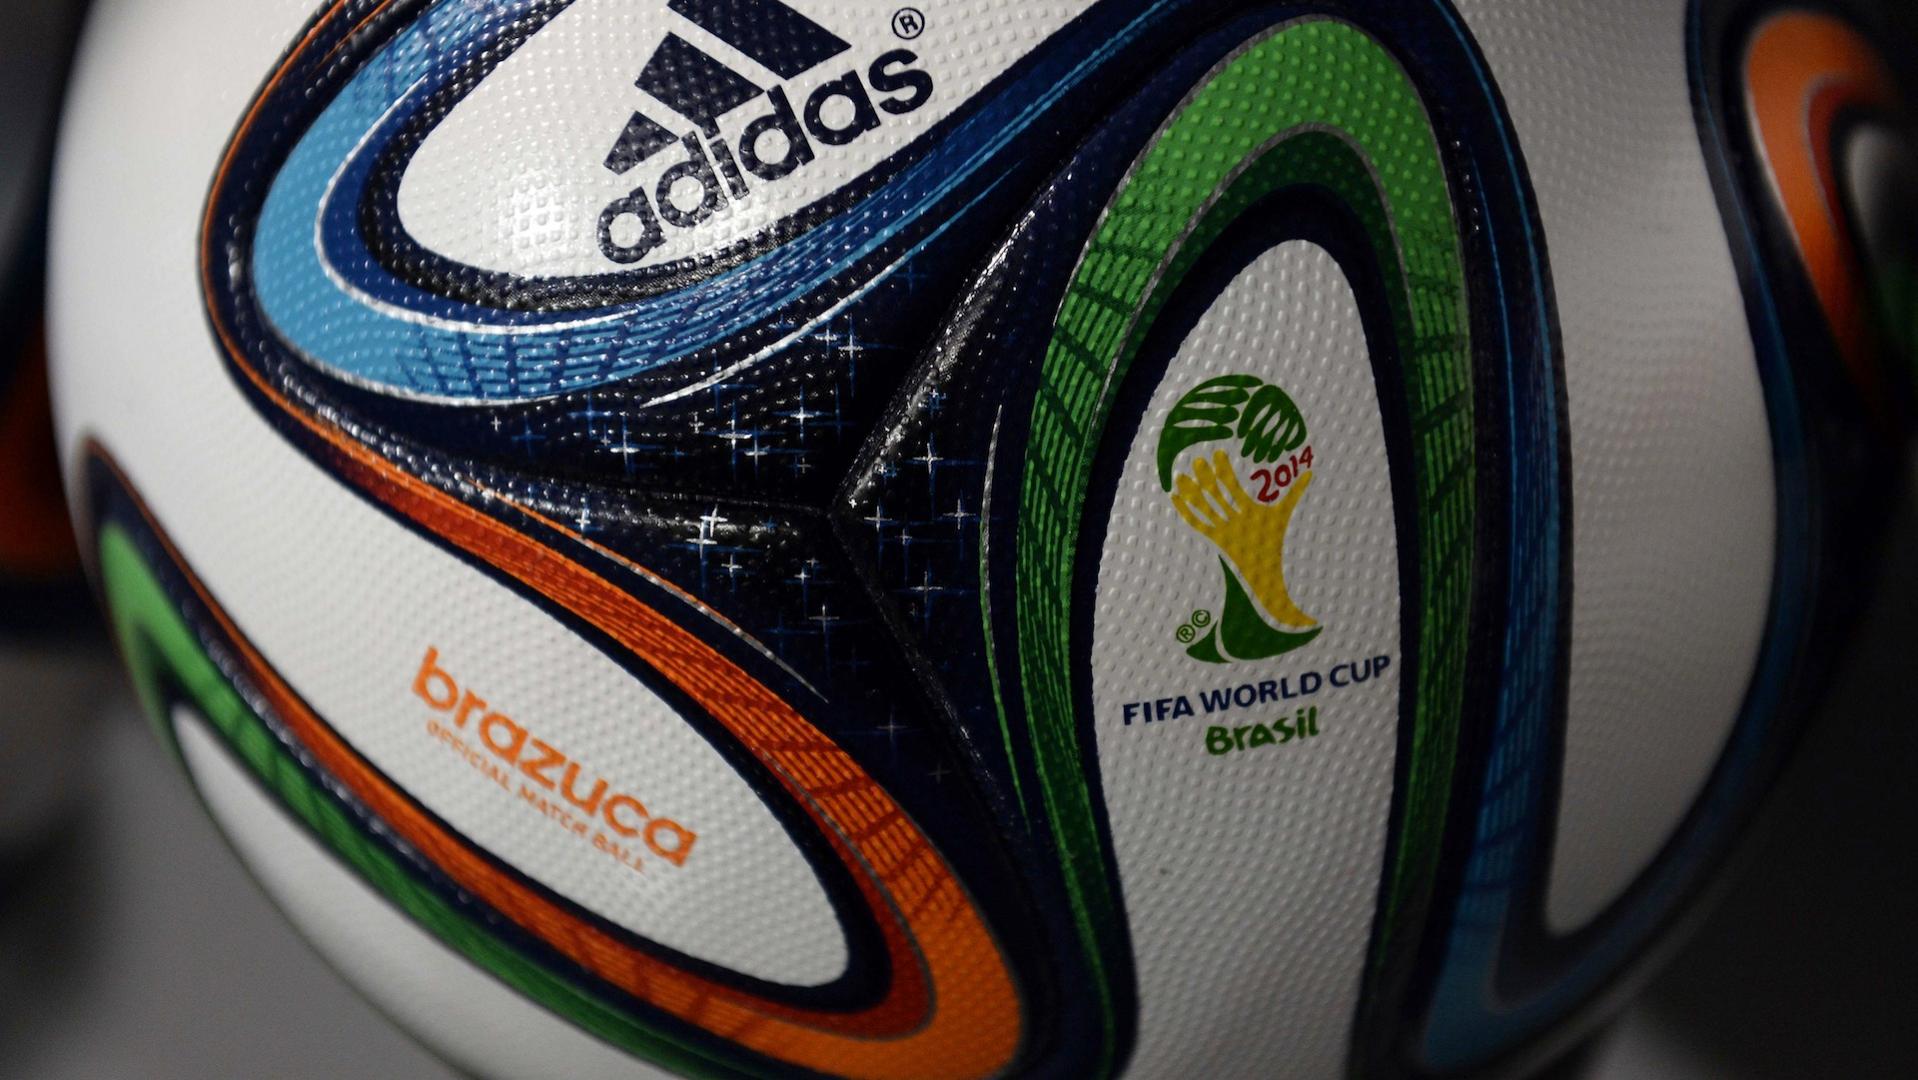 adidas Brazuca to shine in Brazil